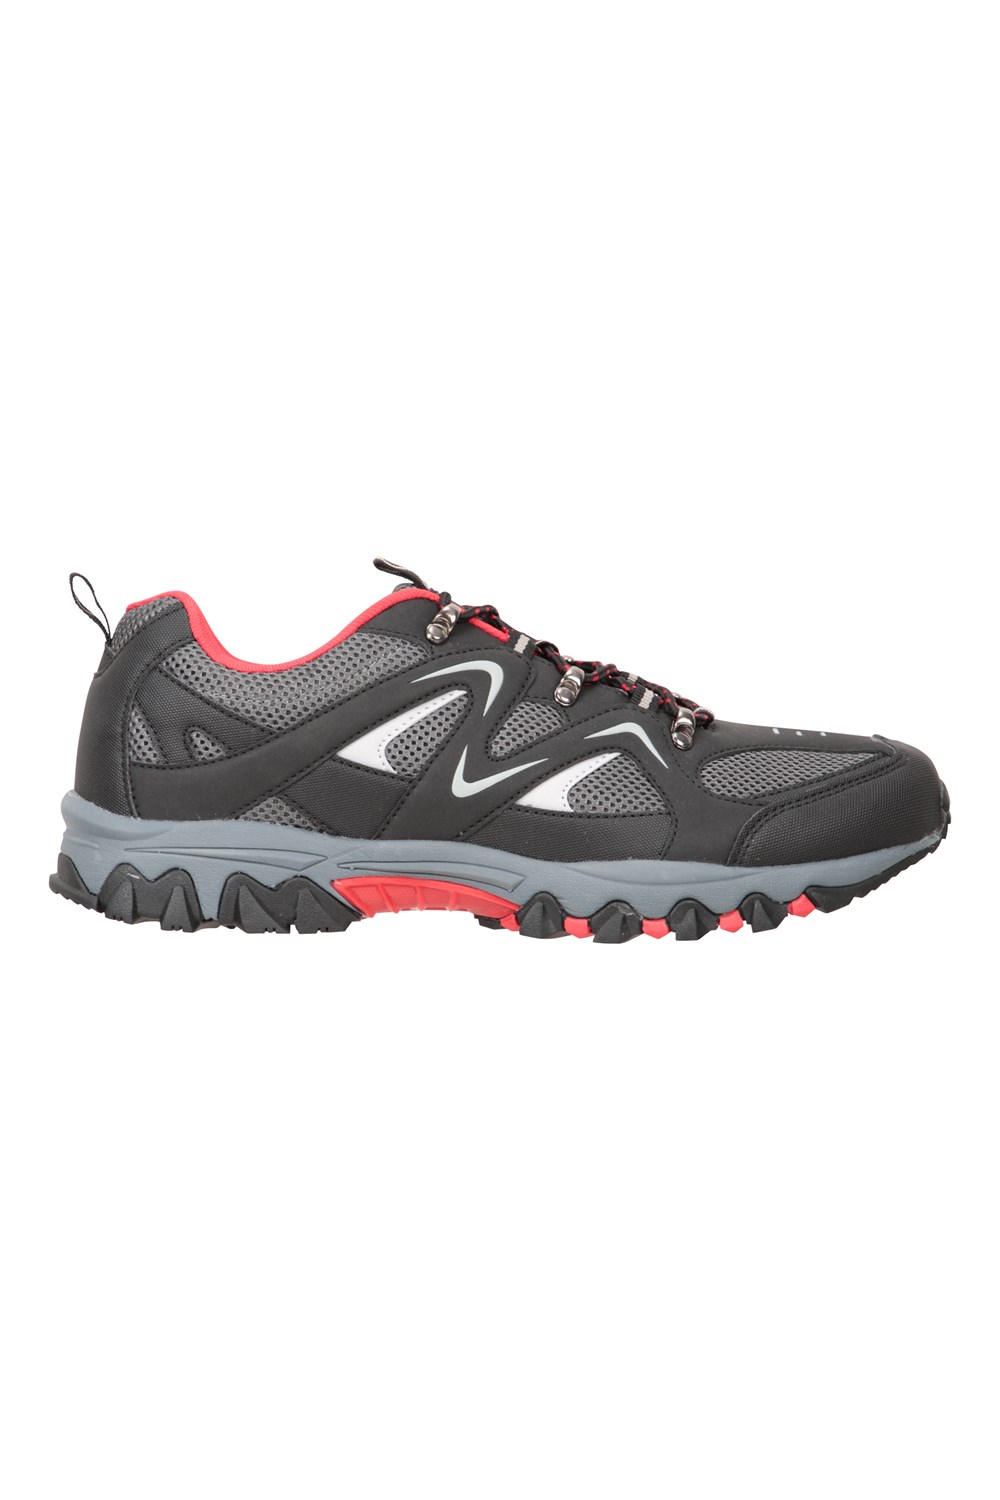 Mountain Warehouse Jungle Men's Walking Shoes Lightweight Soft Running ...